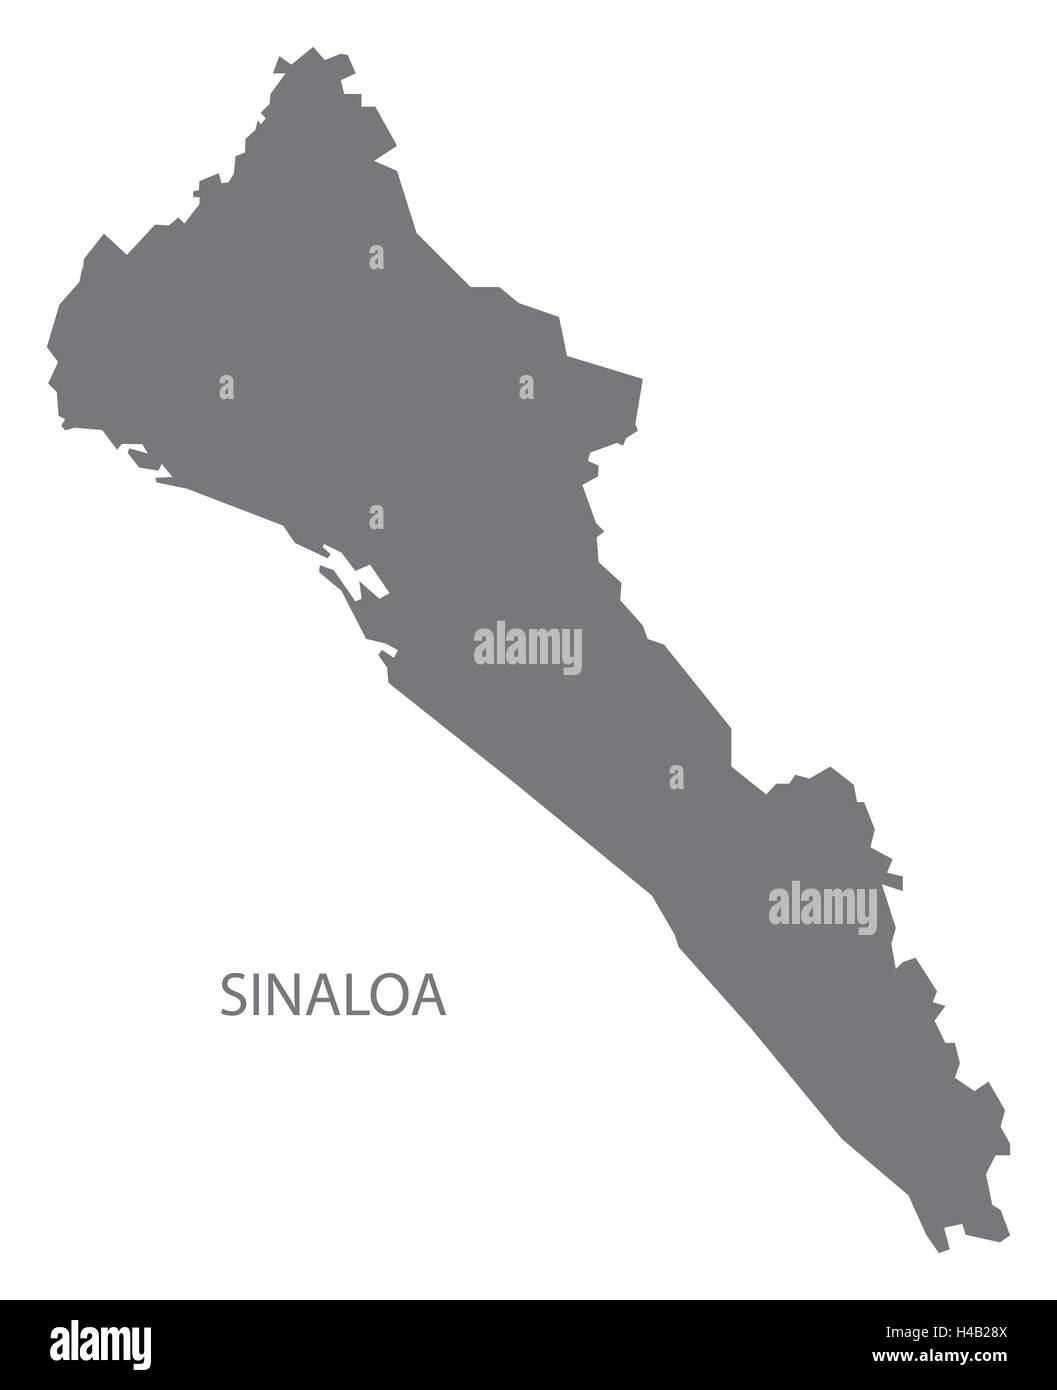 Sinaloa Mexico Map grey Stock Vector